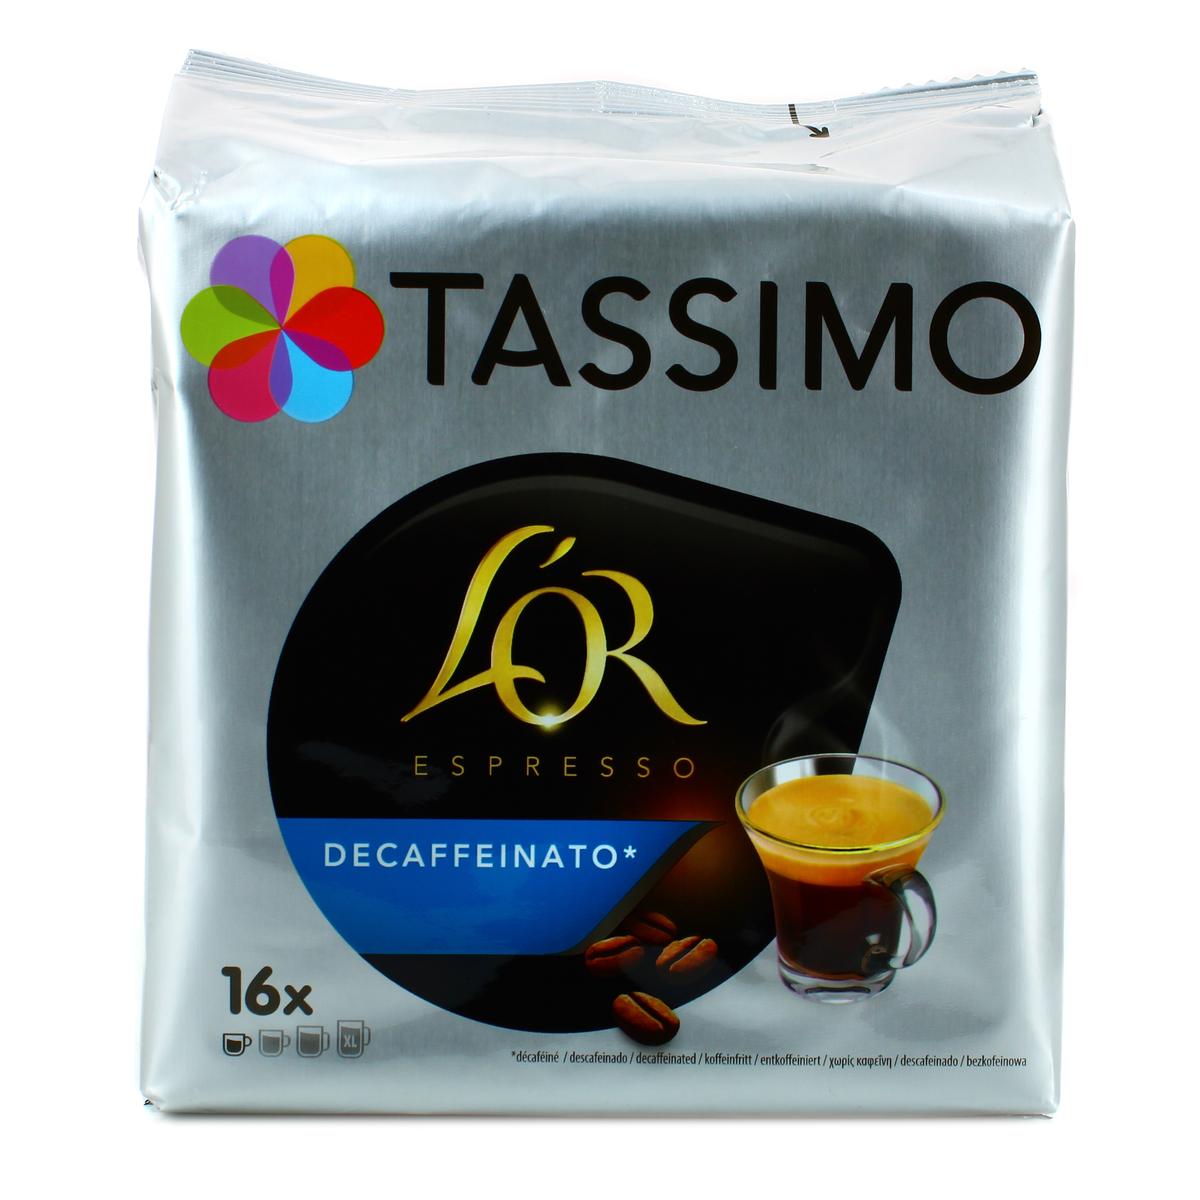 Livraison à domicile Tassimo L'or cappuccino, 8 dosettes